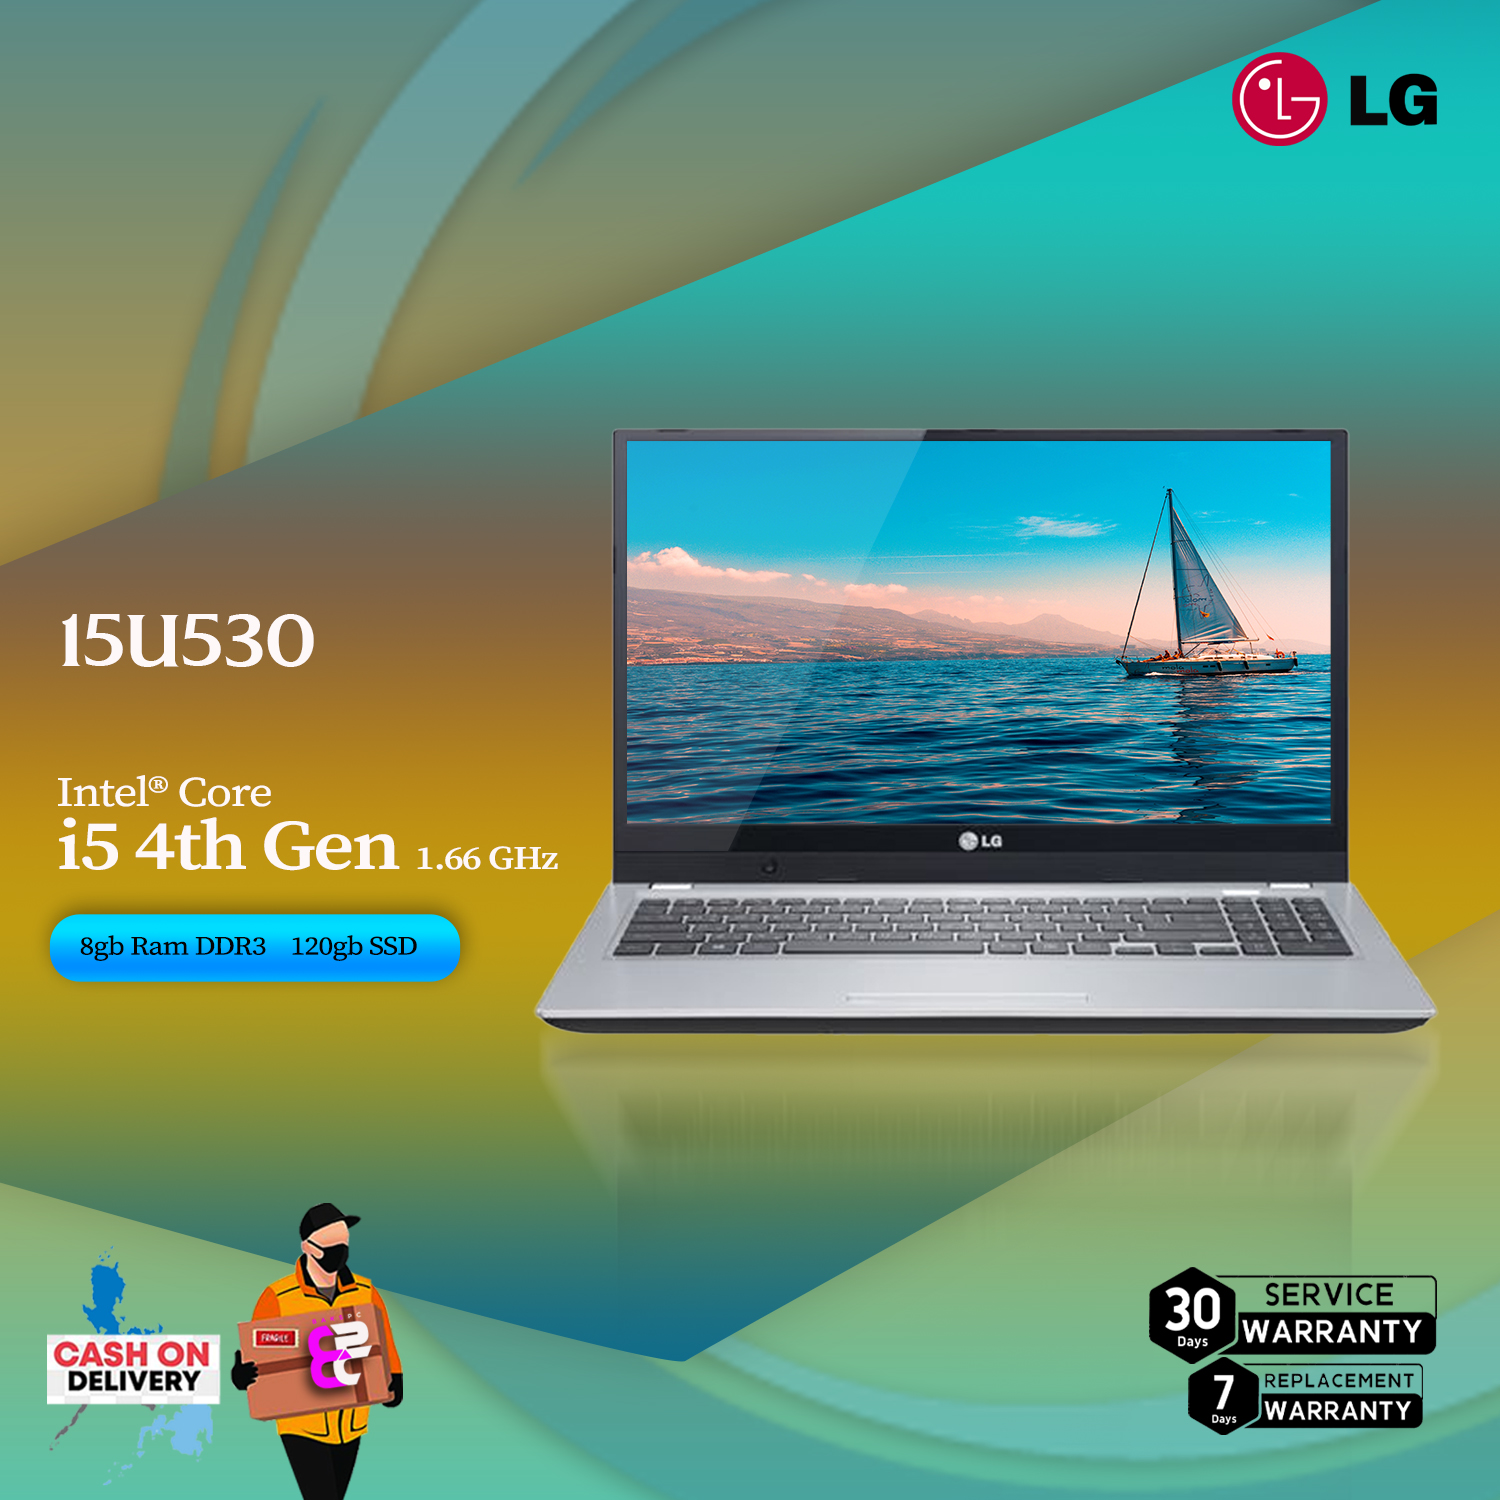 LG 15U530 LAPTOP Intel®Core i5 4th Gen | 8gb Ram | 120gb SSD ...